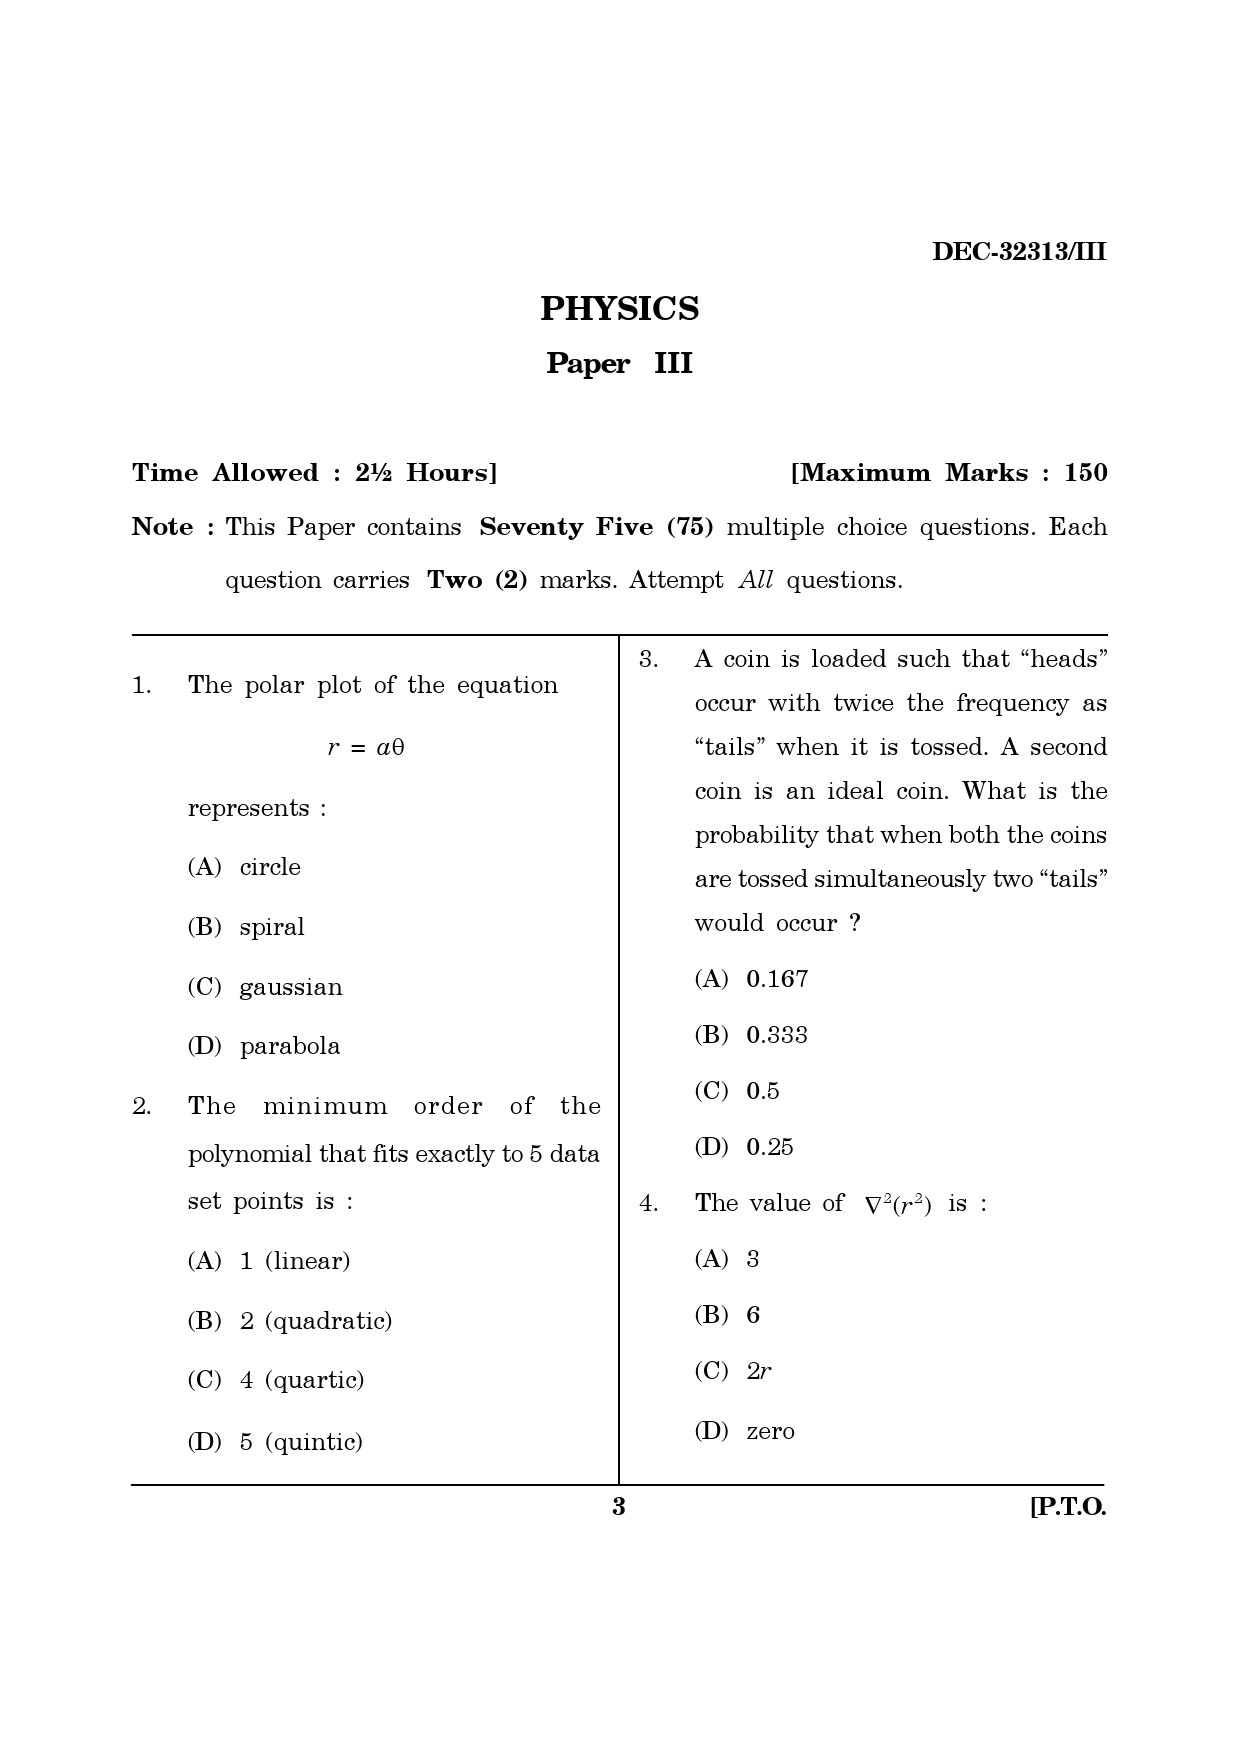 Maharashtra SET Physics Question Paper III December 2013 2